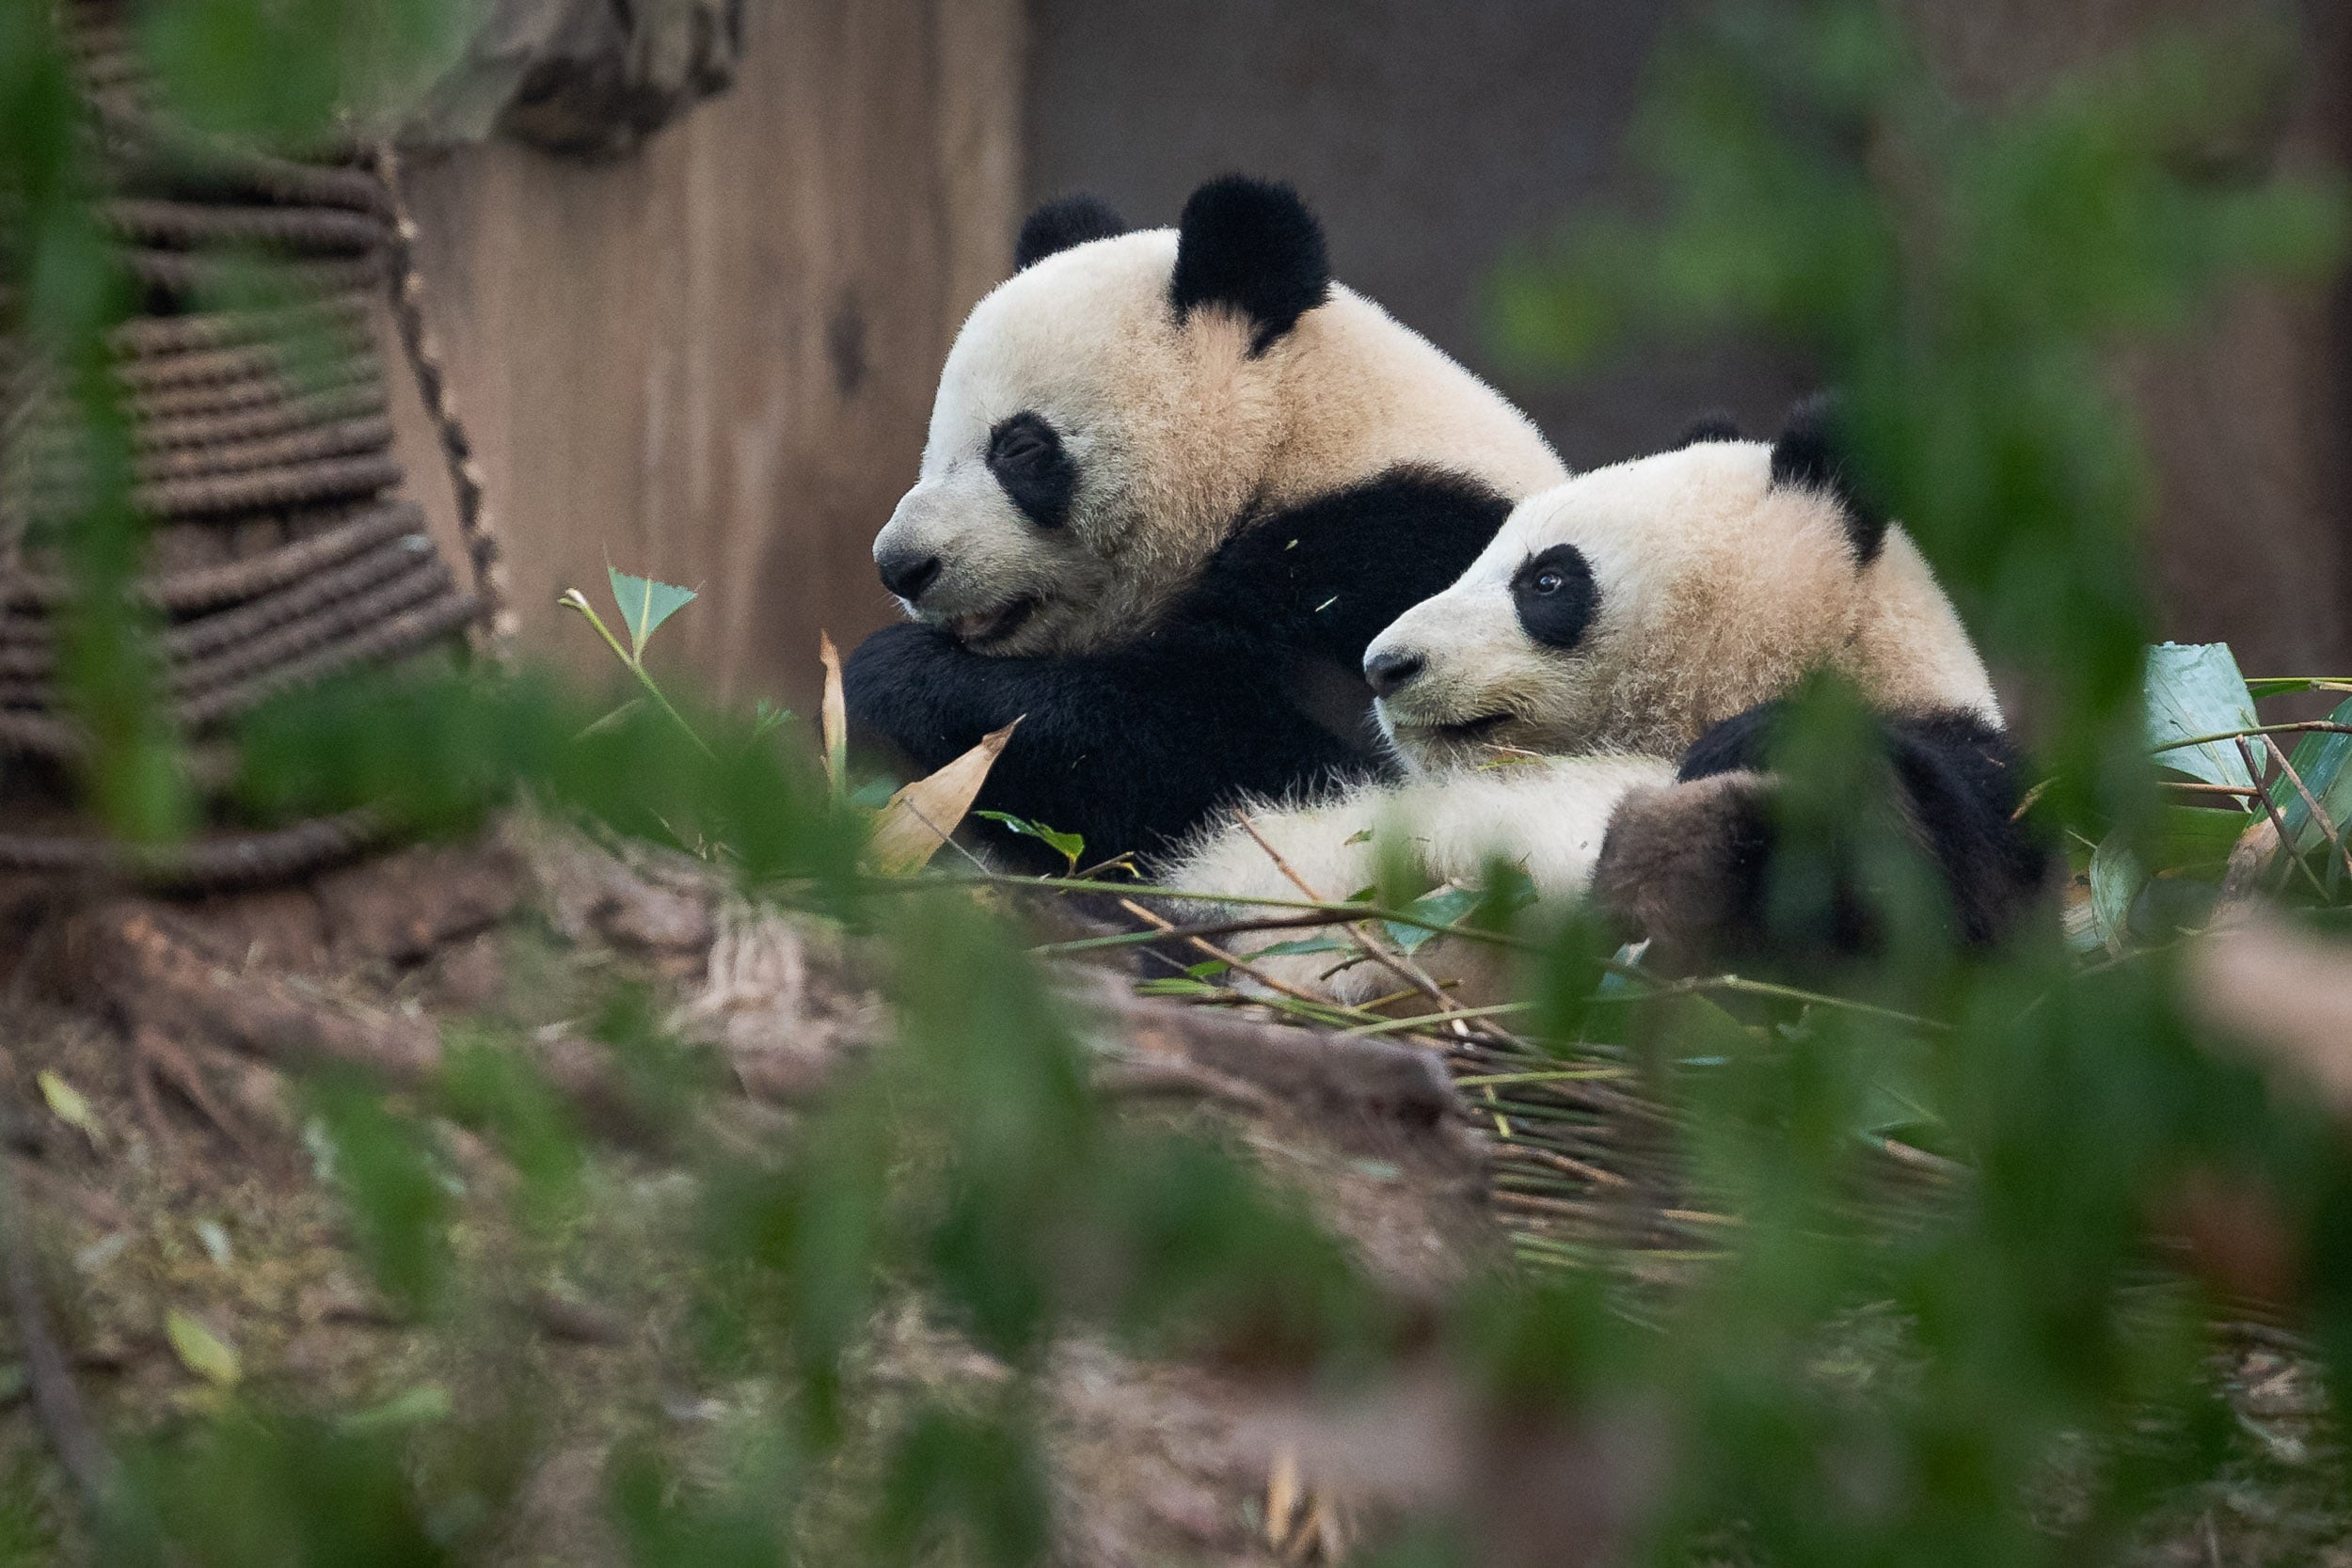 giant pandas eating